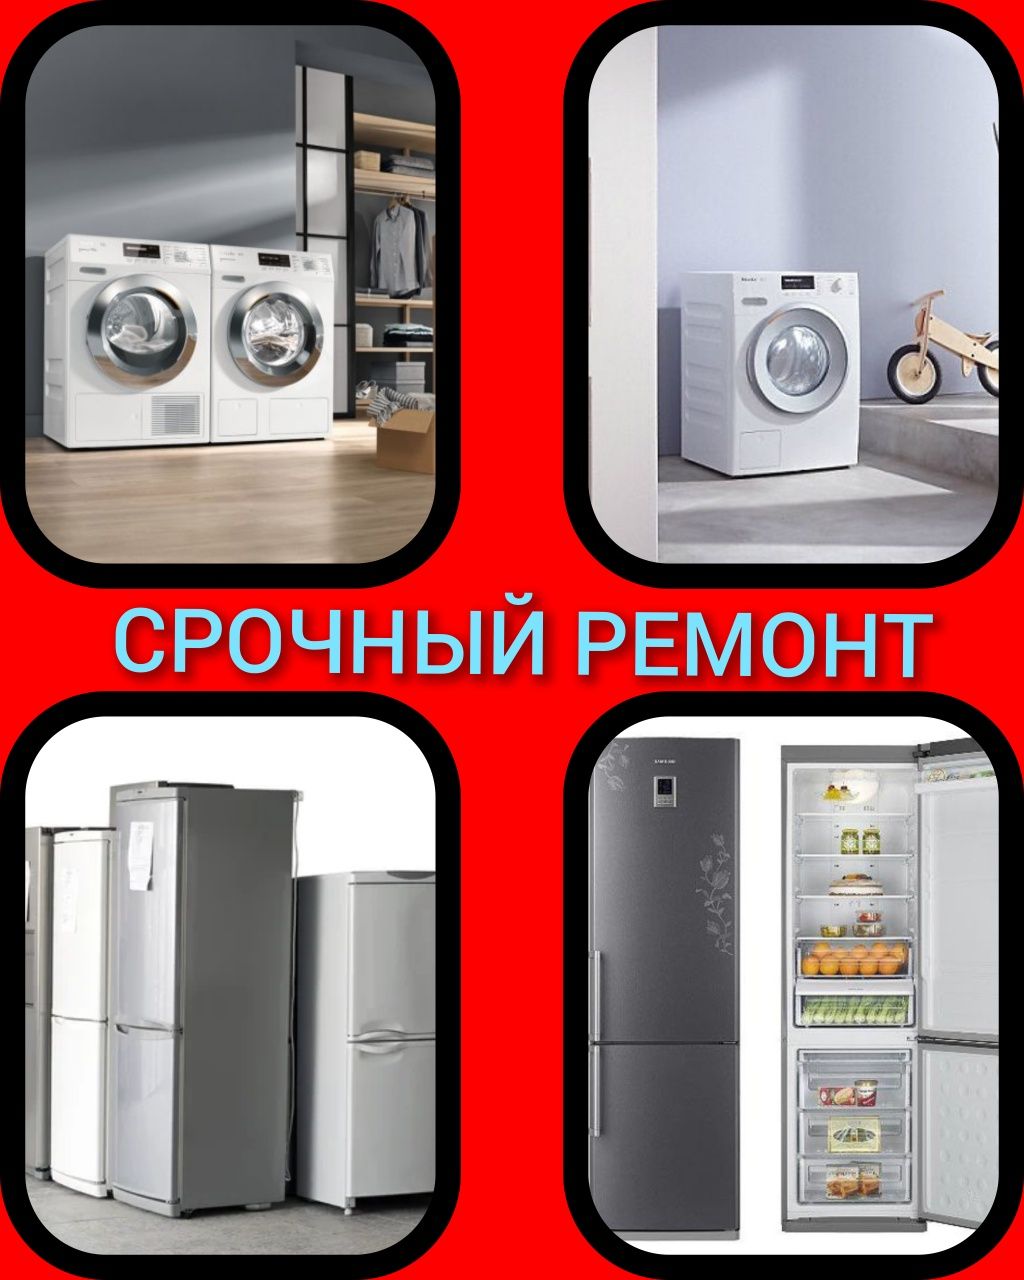 Ремонт Стиральных машин АВТОМАТ и Холодильников